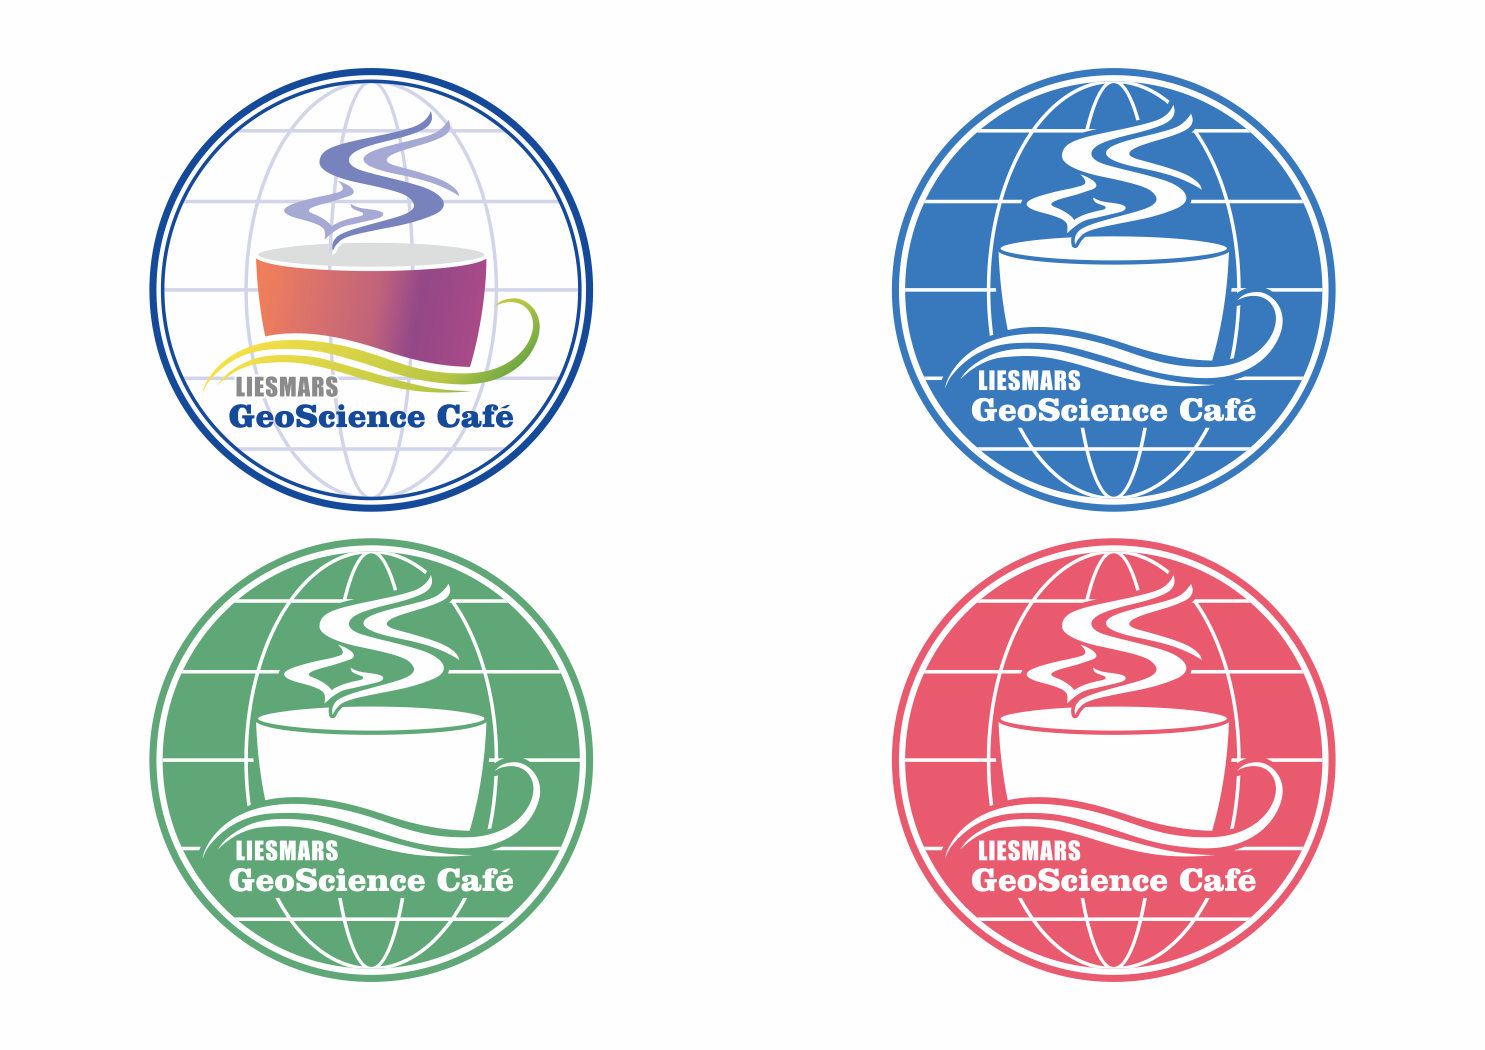 GeoScience Café 目前使用的 logo